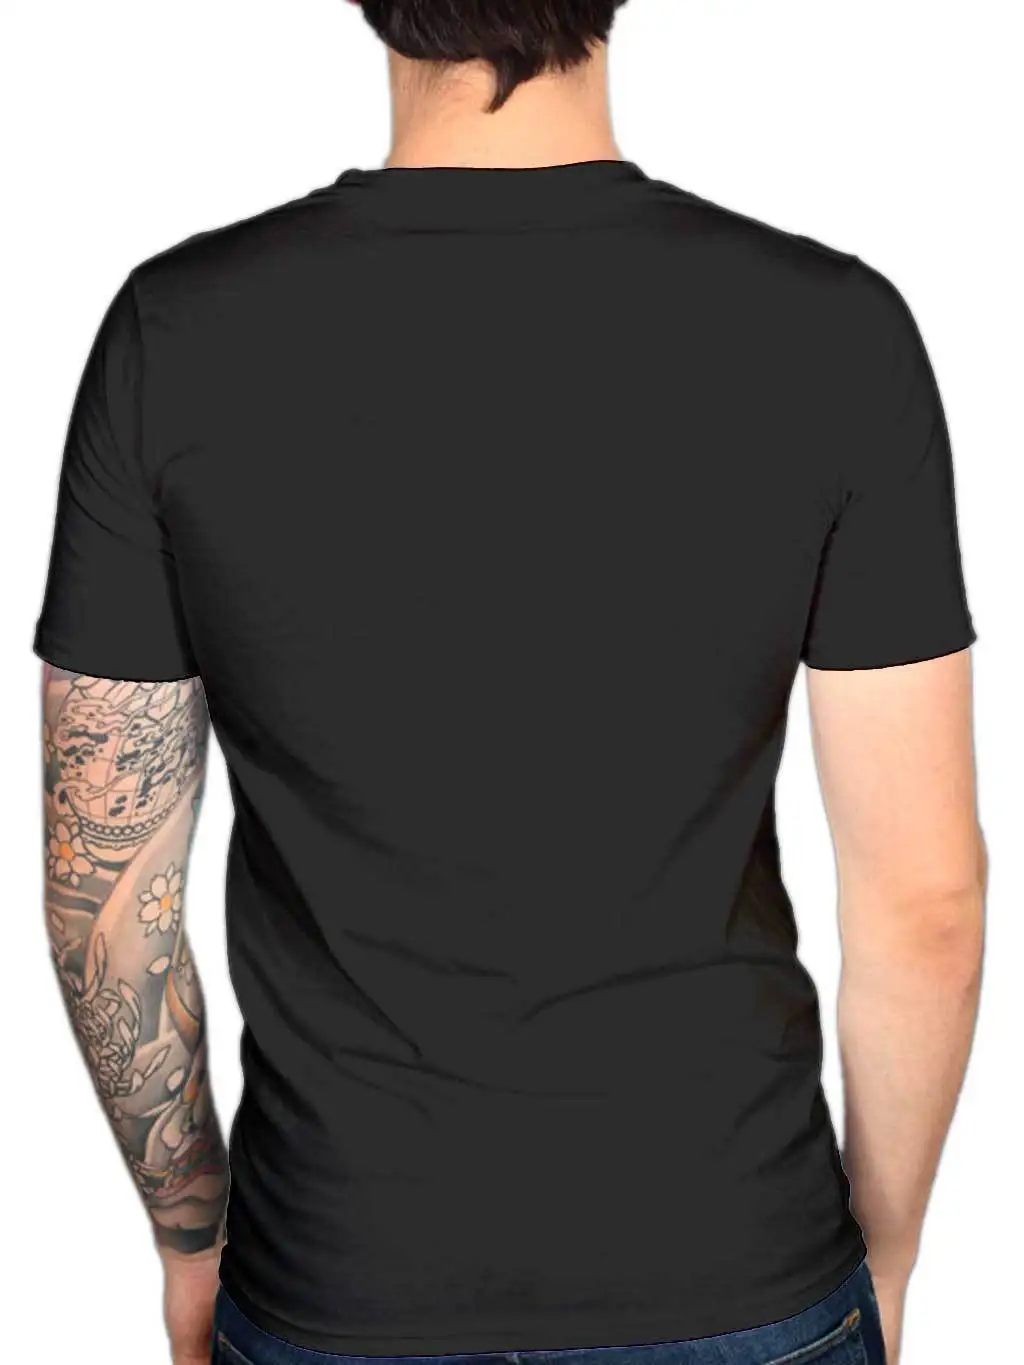 Новая забавная футболка с изображением Звездных войн, куропаток для девушек, мужской размер, Мужская крутая Повседневная футболка, Мужская модная футболка унисекс